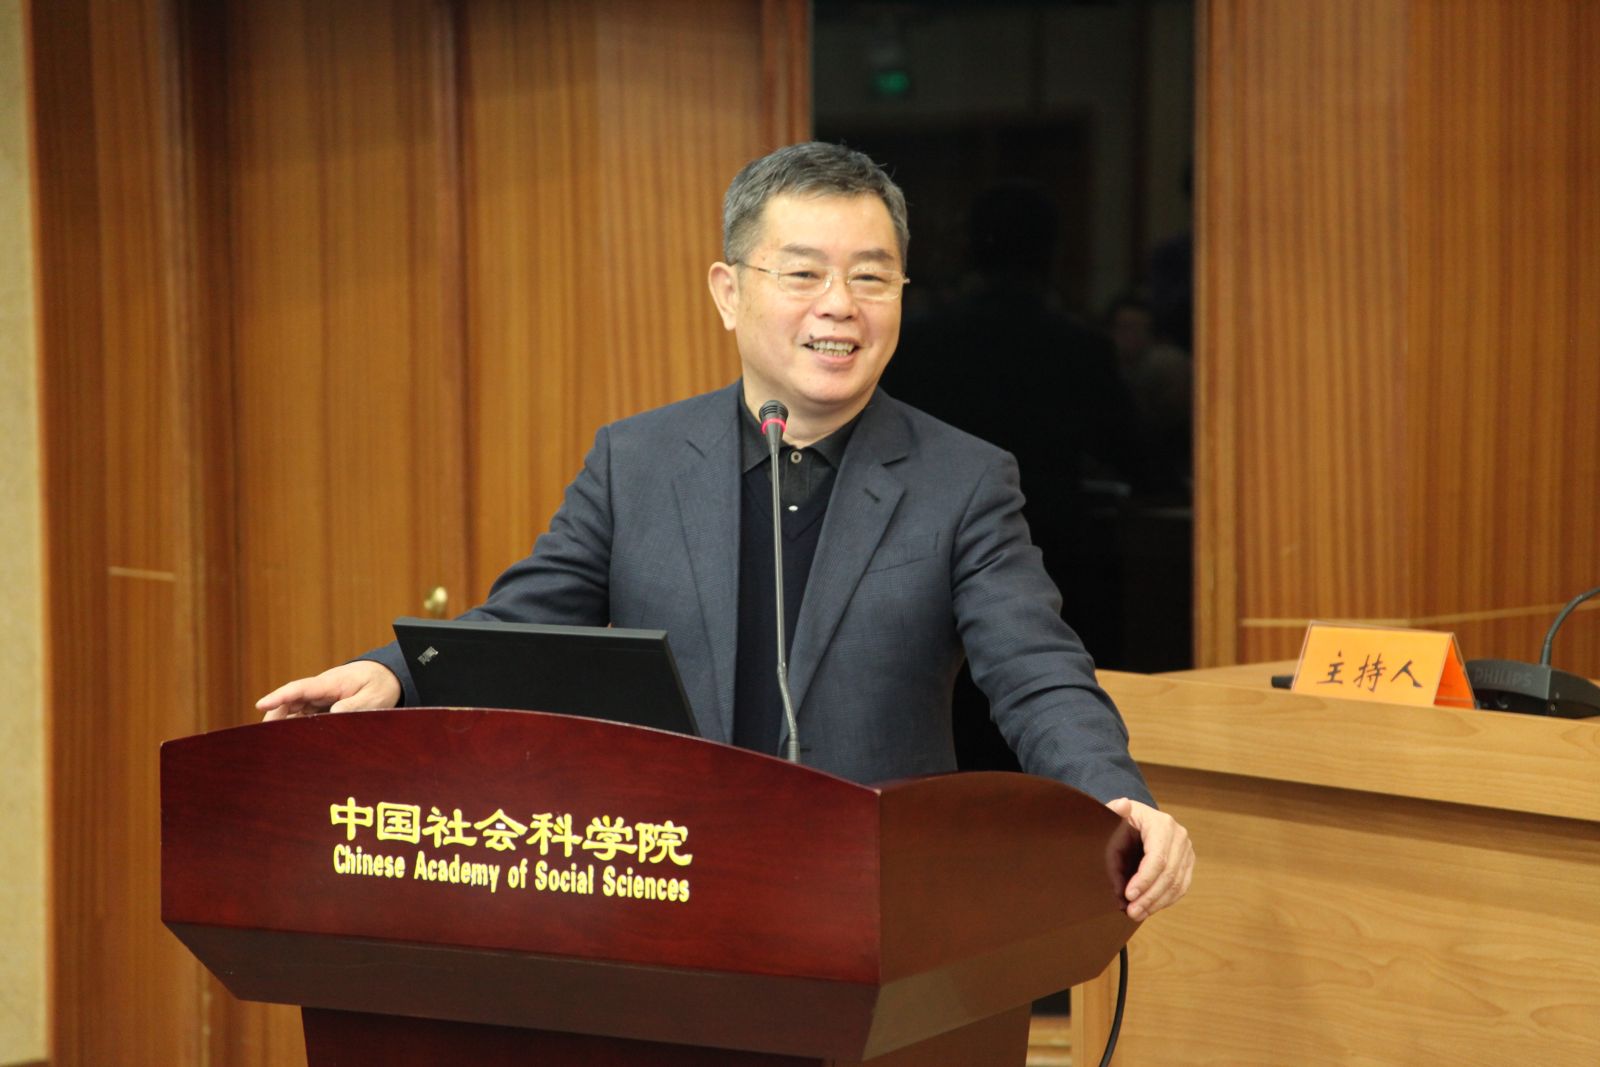 中国社会科学院副院长李扬做主题发言